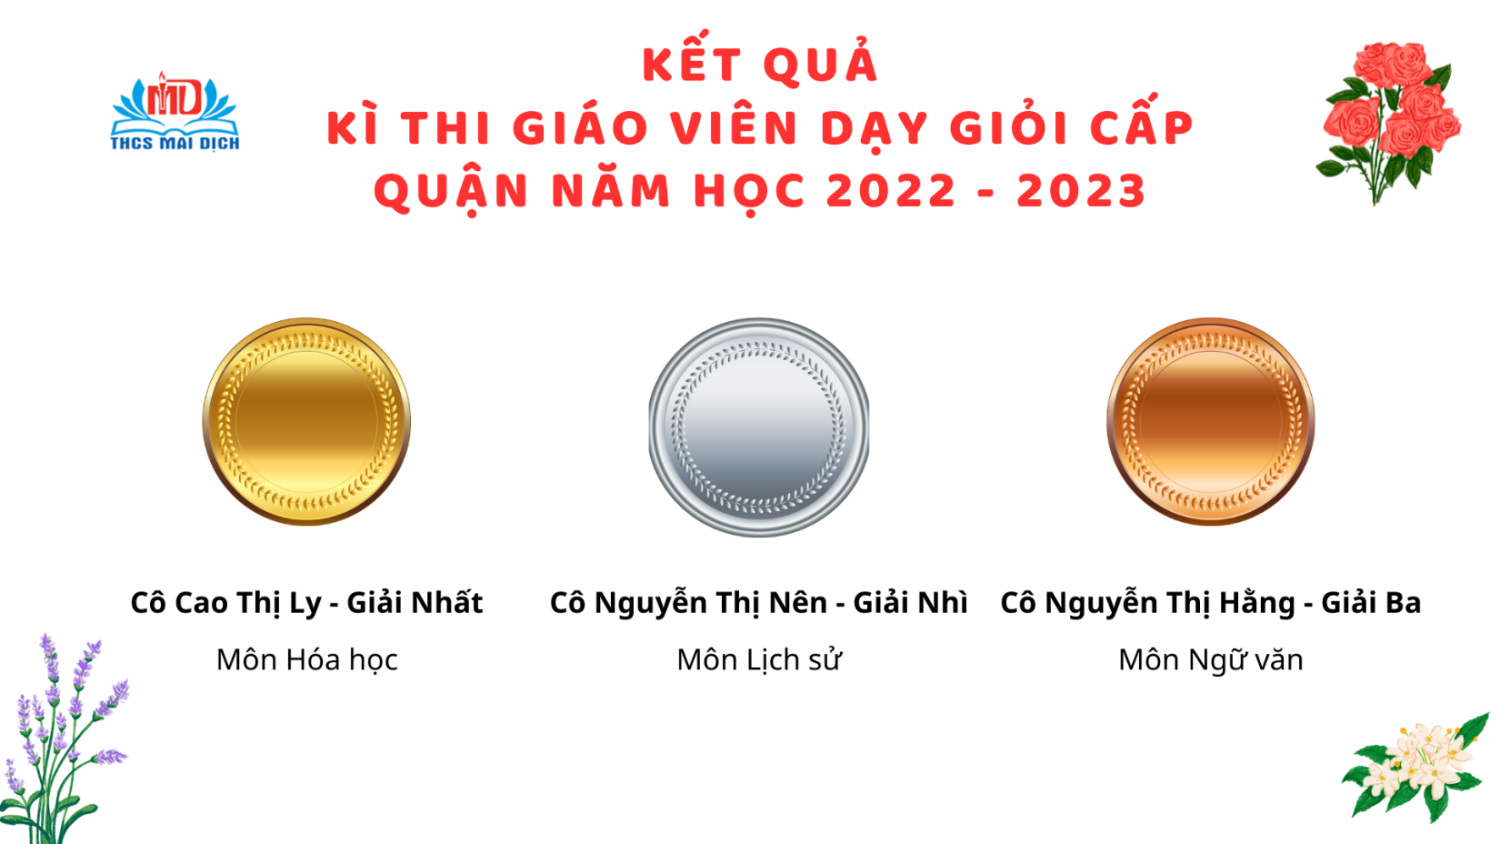 CHÚC MỪNG KẾT QUẢ THI GVG CẤP QUẬN NĂM HỌC 2022 - 2023